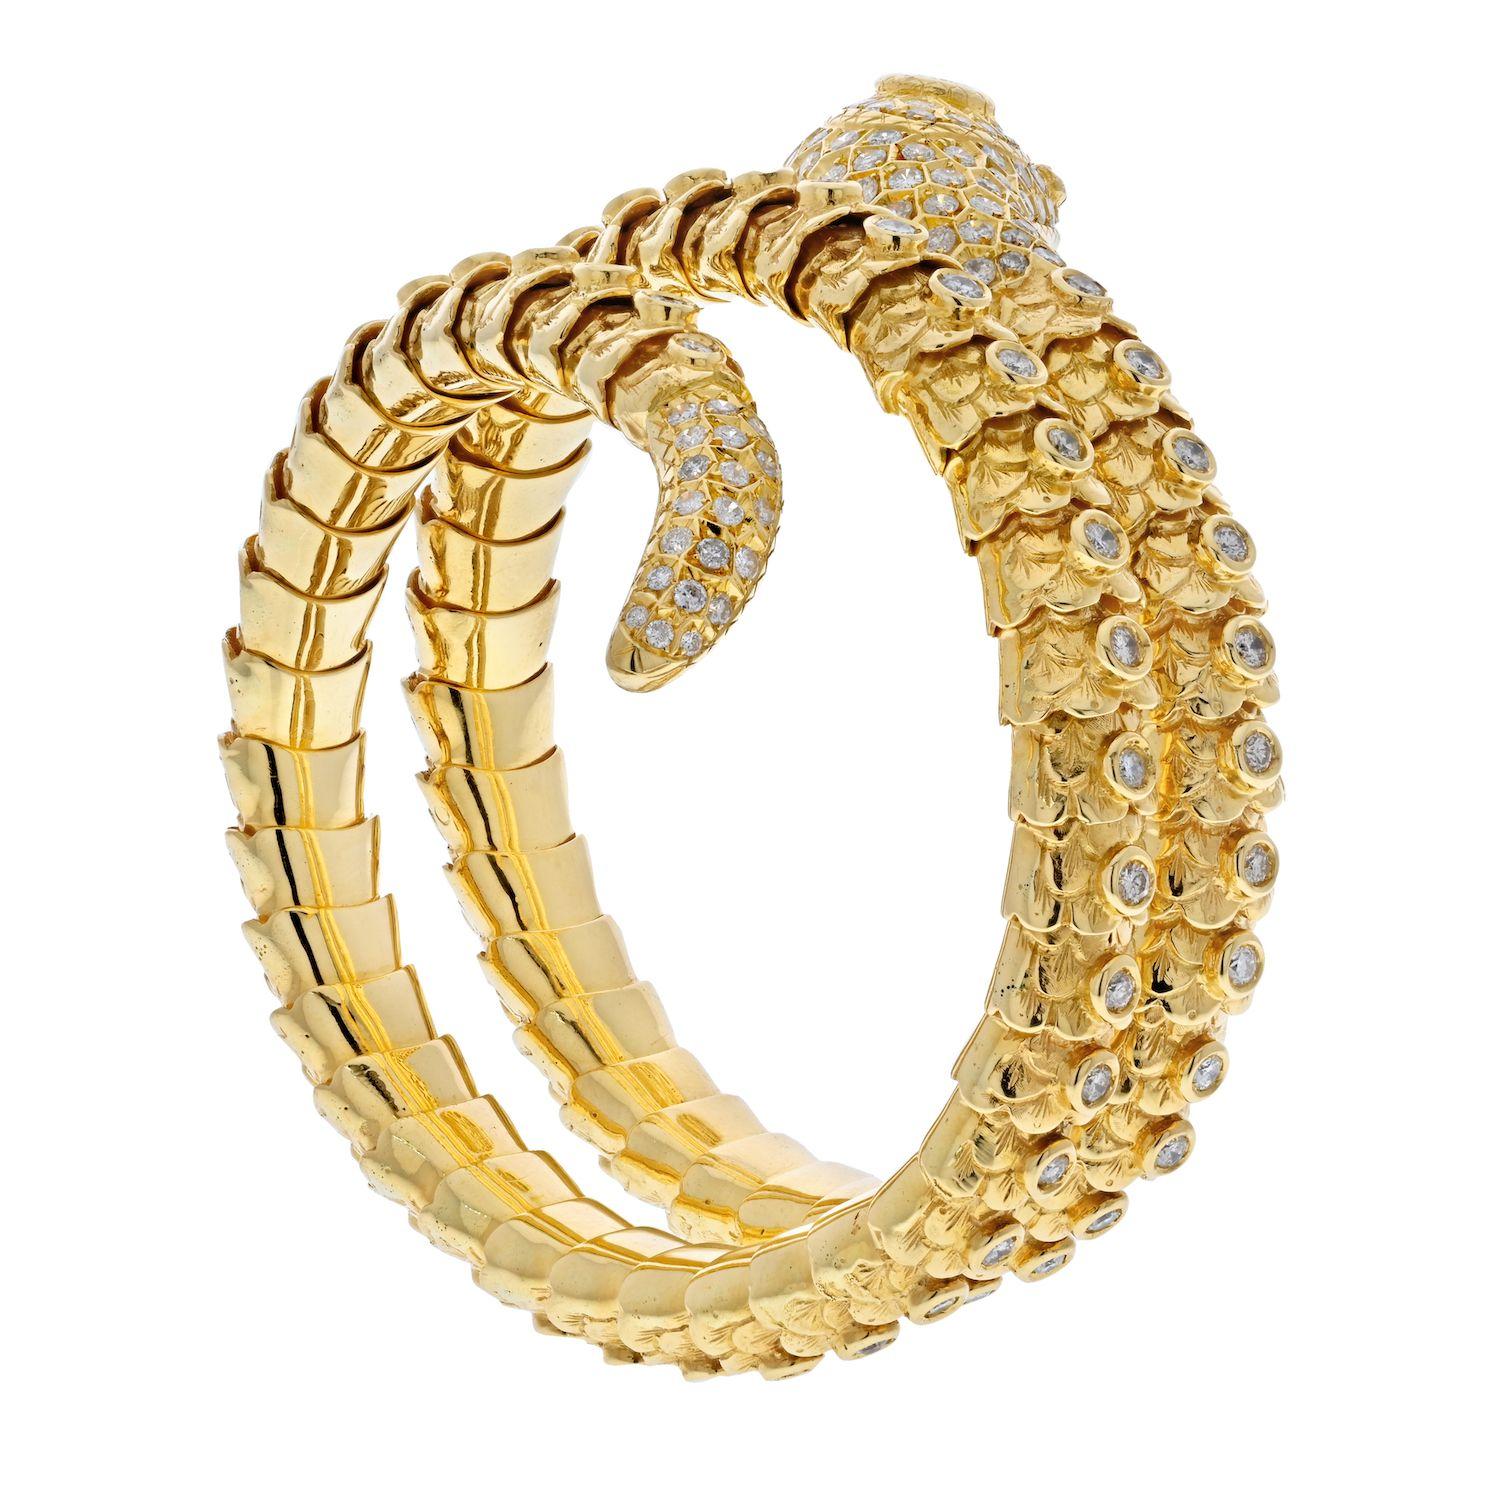 18K Gelbgold Serpent Snake Wrap Around Diamond Armband.

Dies ist eine schöne Schlange Schlange wickeln Armband in 18 Karat Gelbgold gefertigt, Diese Schlange hat eine niedliche Persönlichkeit mit einem kleinen spielerischen Zunge ragt aus seinem